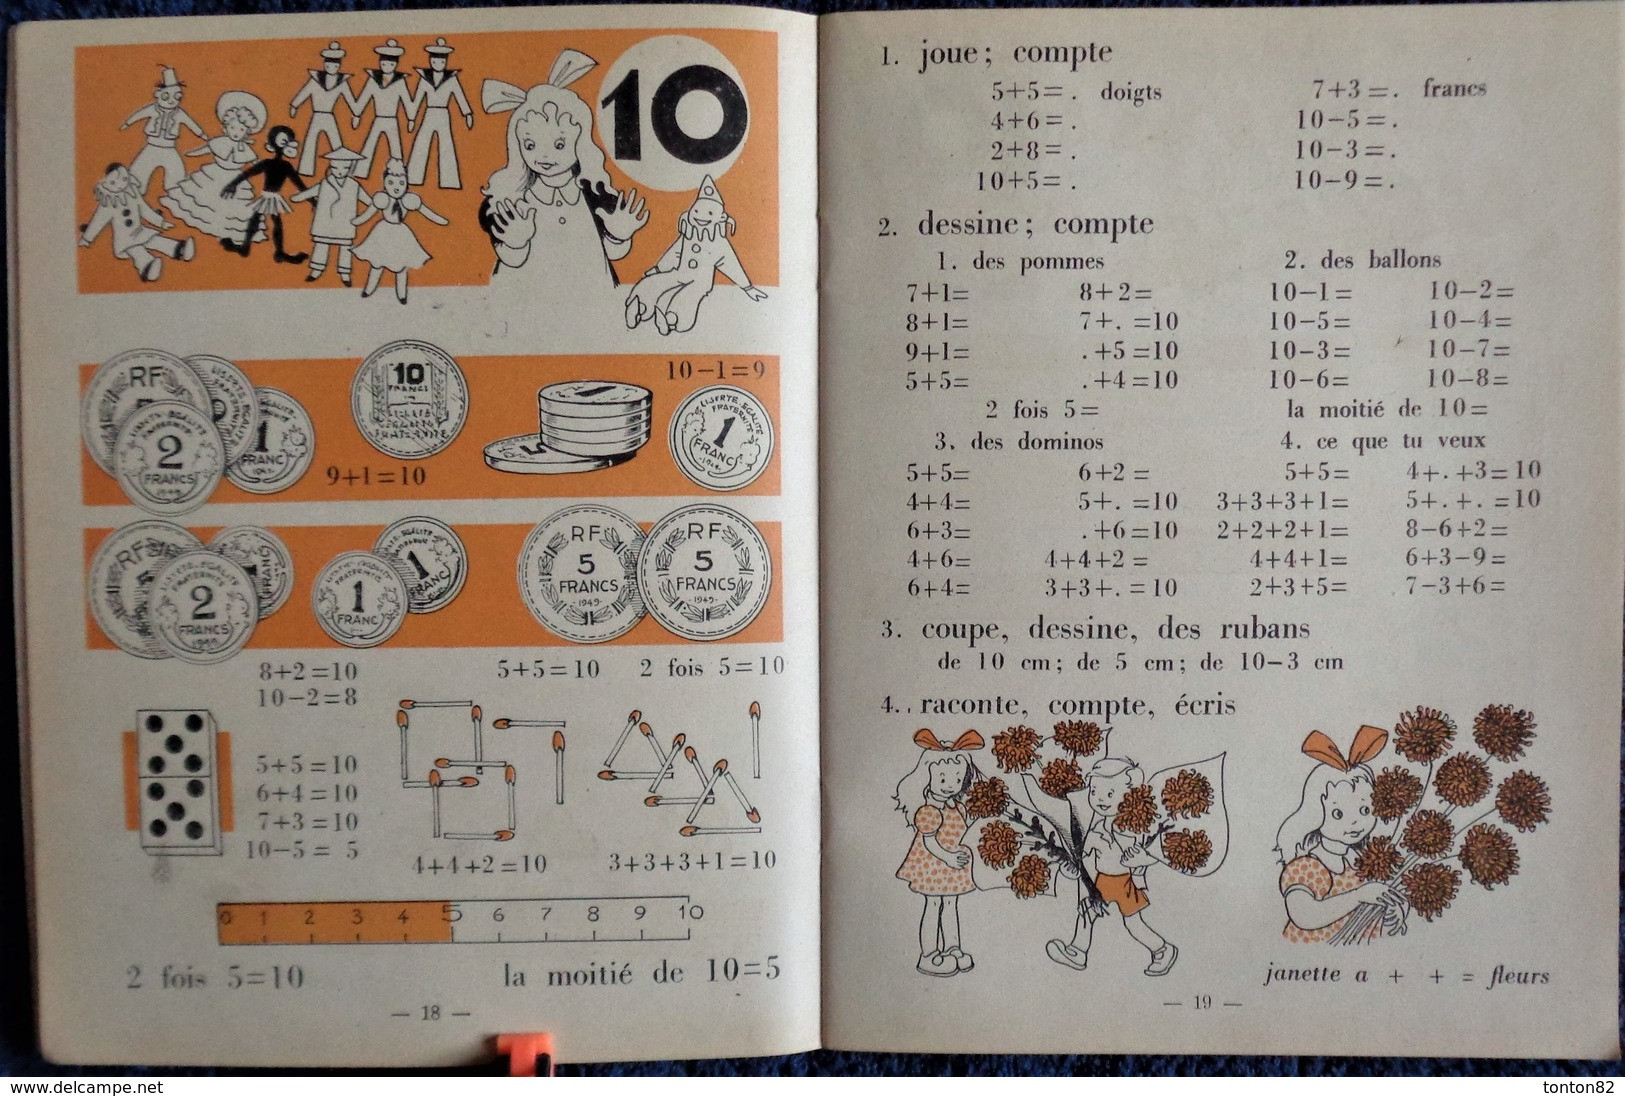 U. Coux - M.M. Deyres - Pour Compter Comme Les Grands - 1er Livre De Calcul - Charles-Lavauzelle & Cie, éditeurs - 1950 - 0-6 Ans